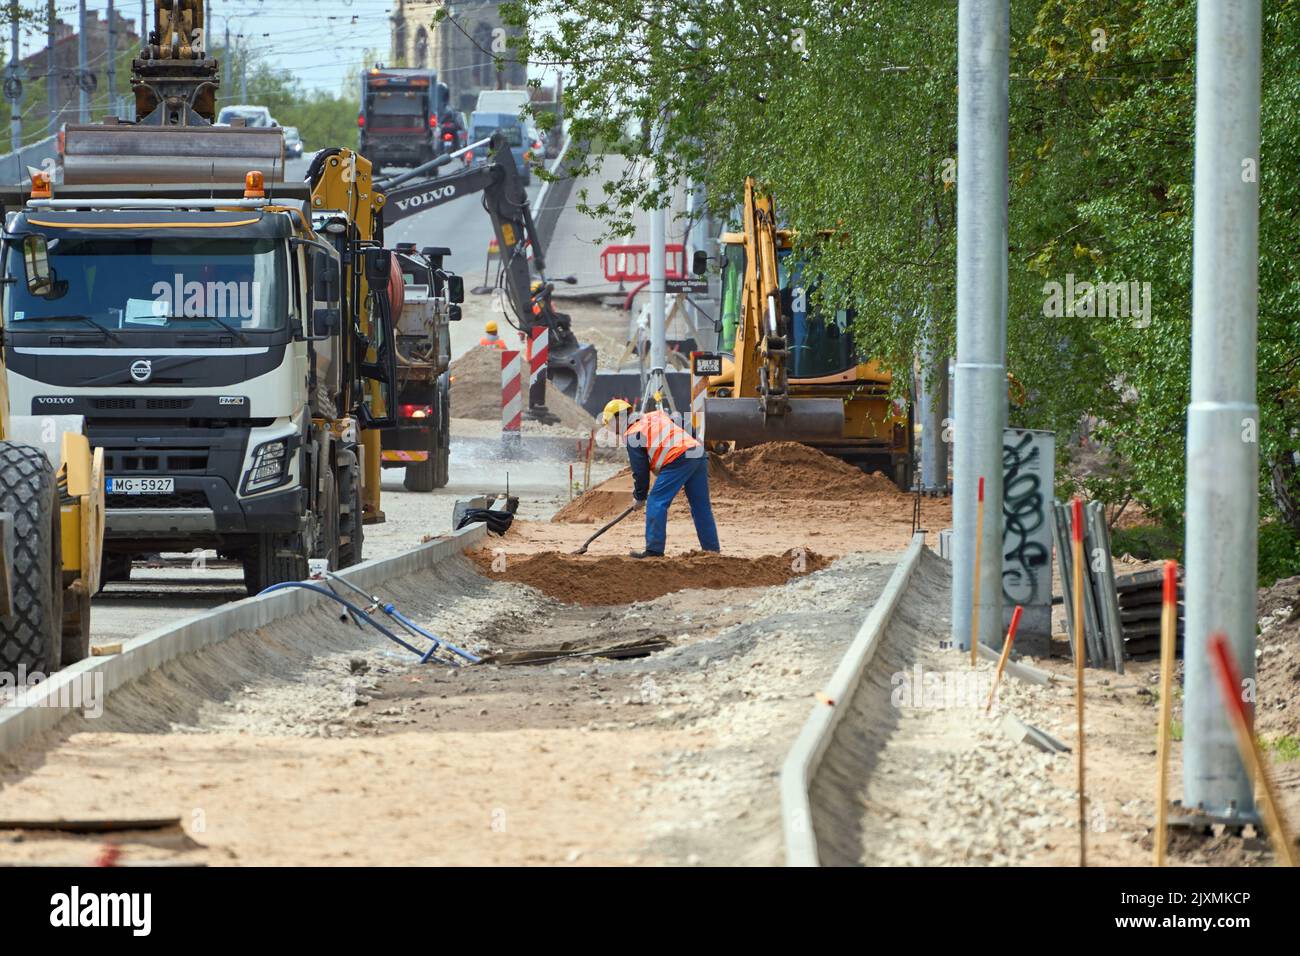 RIGA, LETTONIA - 13 MAGGIO 2022: Riparazione stradale in via Deglava. Un lavoratore in uniforme scava sabbia con una pala. Lavoro duro. Macchine da costruzione pesanti in piedi accanto. Foto Stock